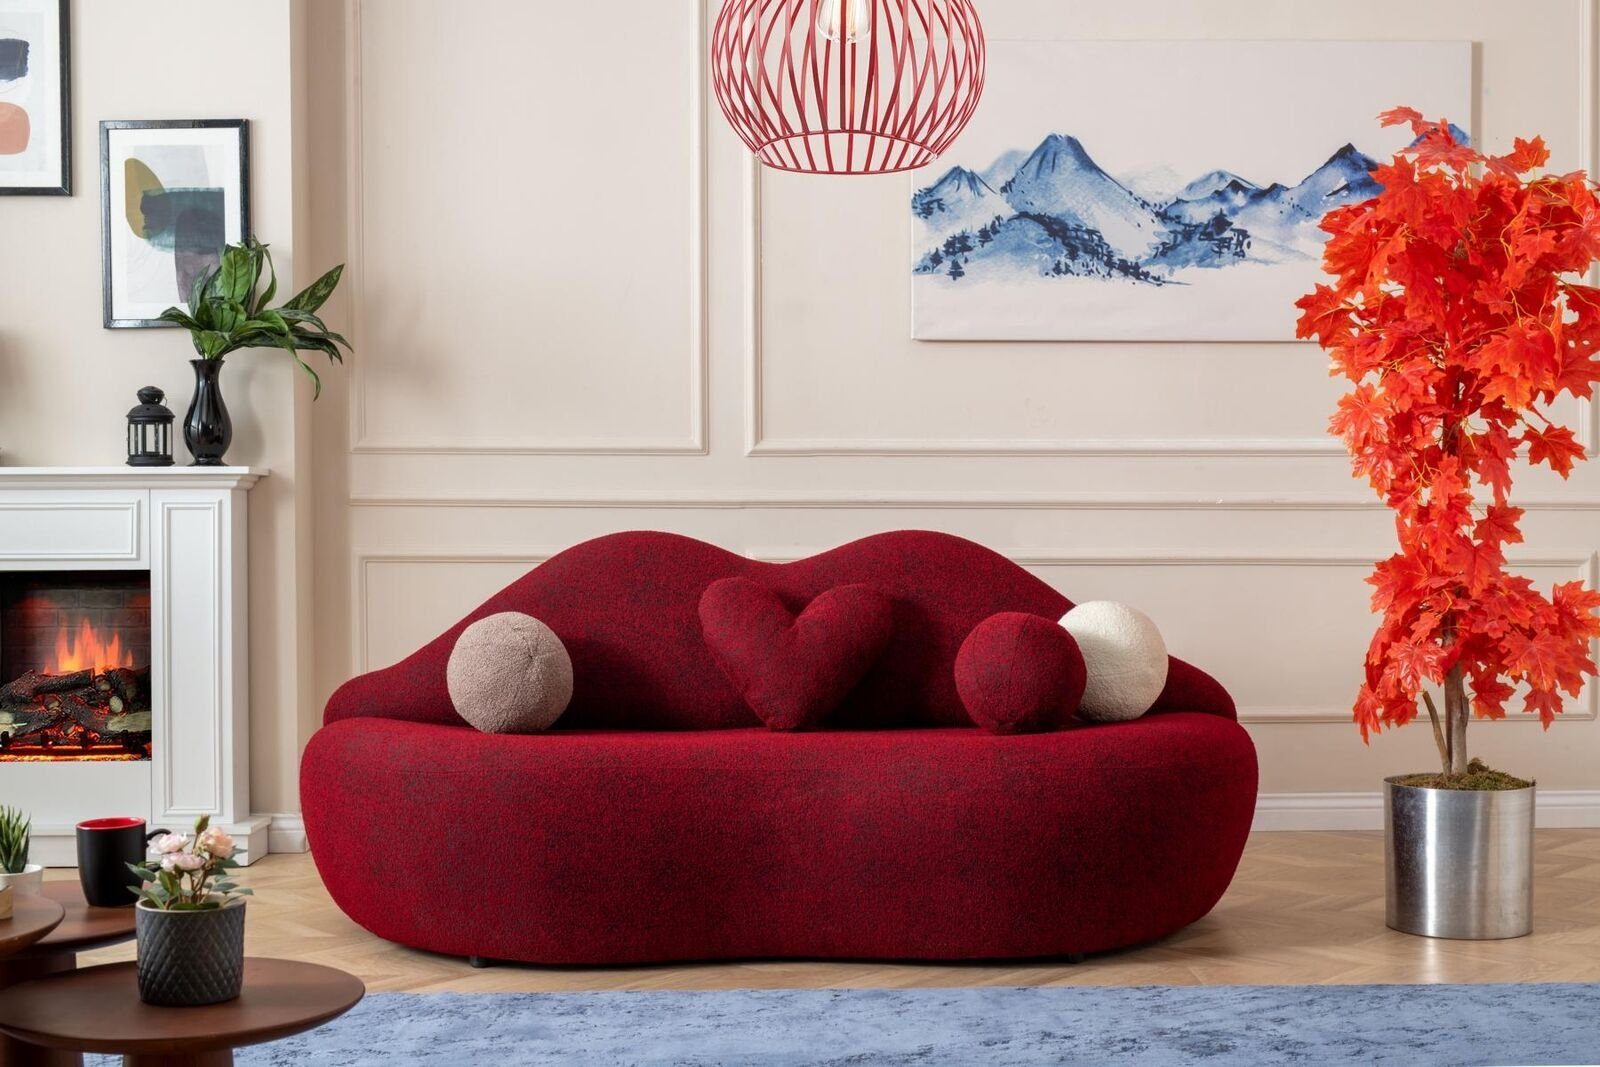 Made Lippen Europa von 3 in Form rot stilvoll farbe Teile, in Sitzpolster, sofa JVmoebel 1 3-Sitzer Sitzer